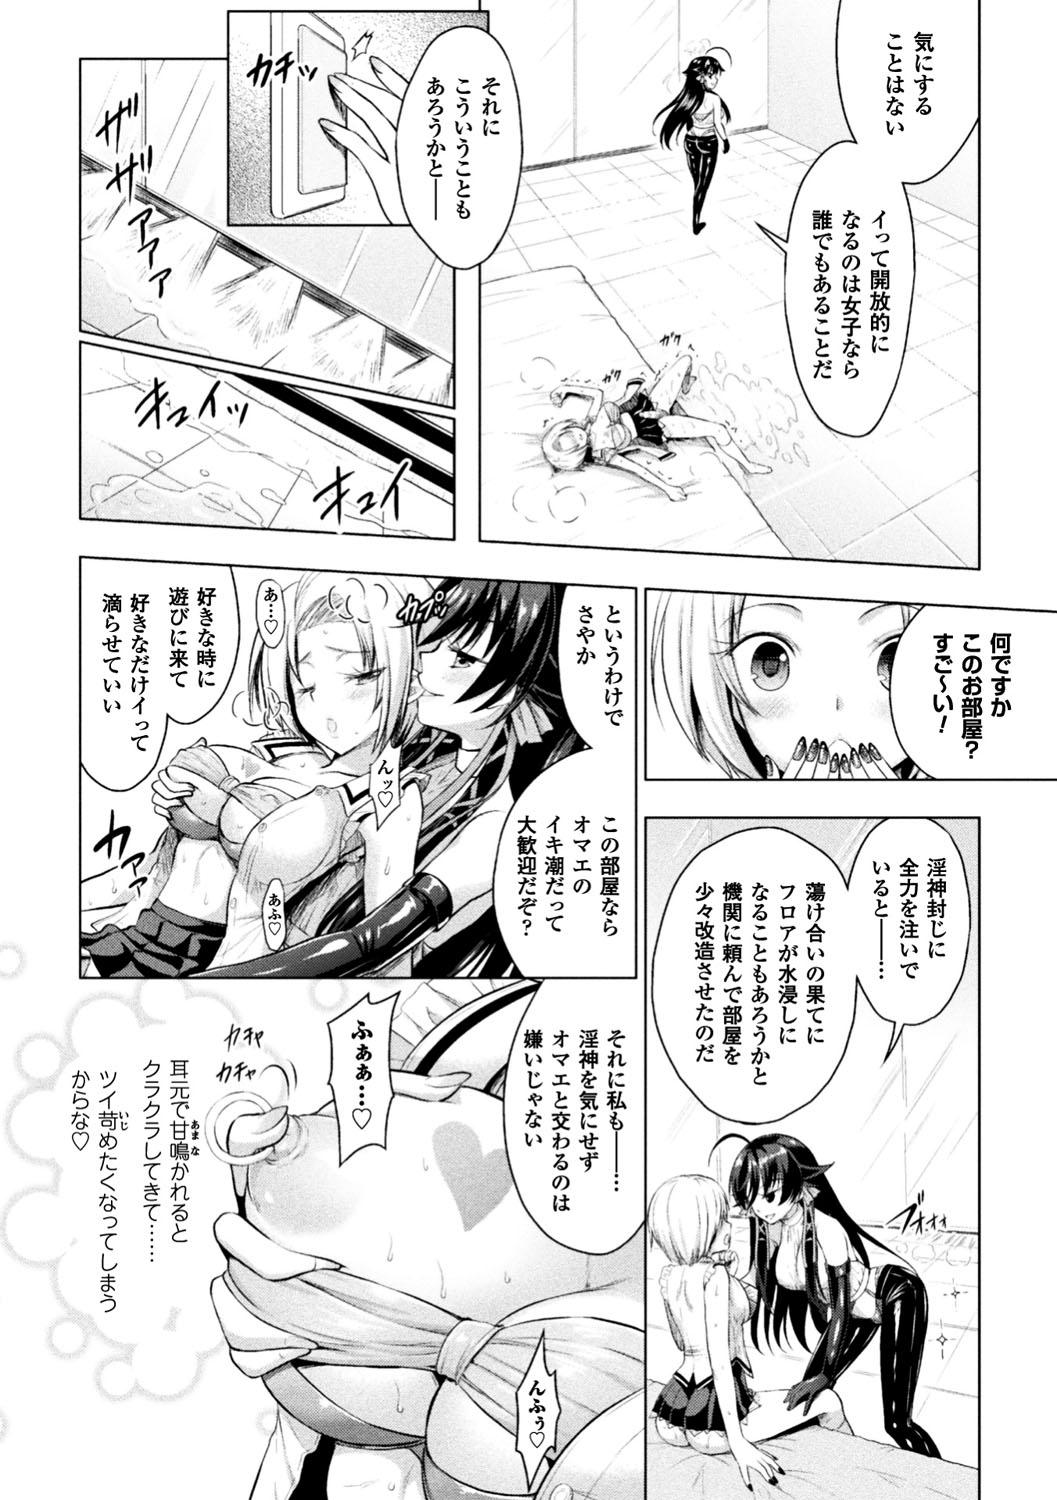 Seigi no Heroine Kangoku File Vol. 13 73